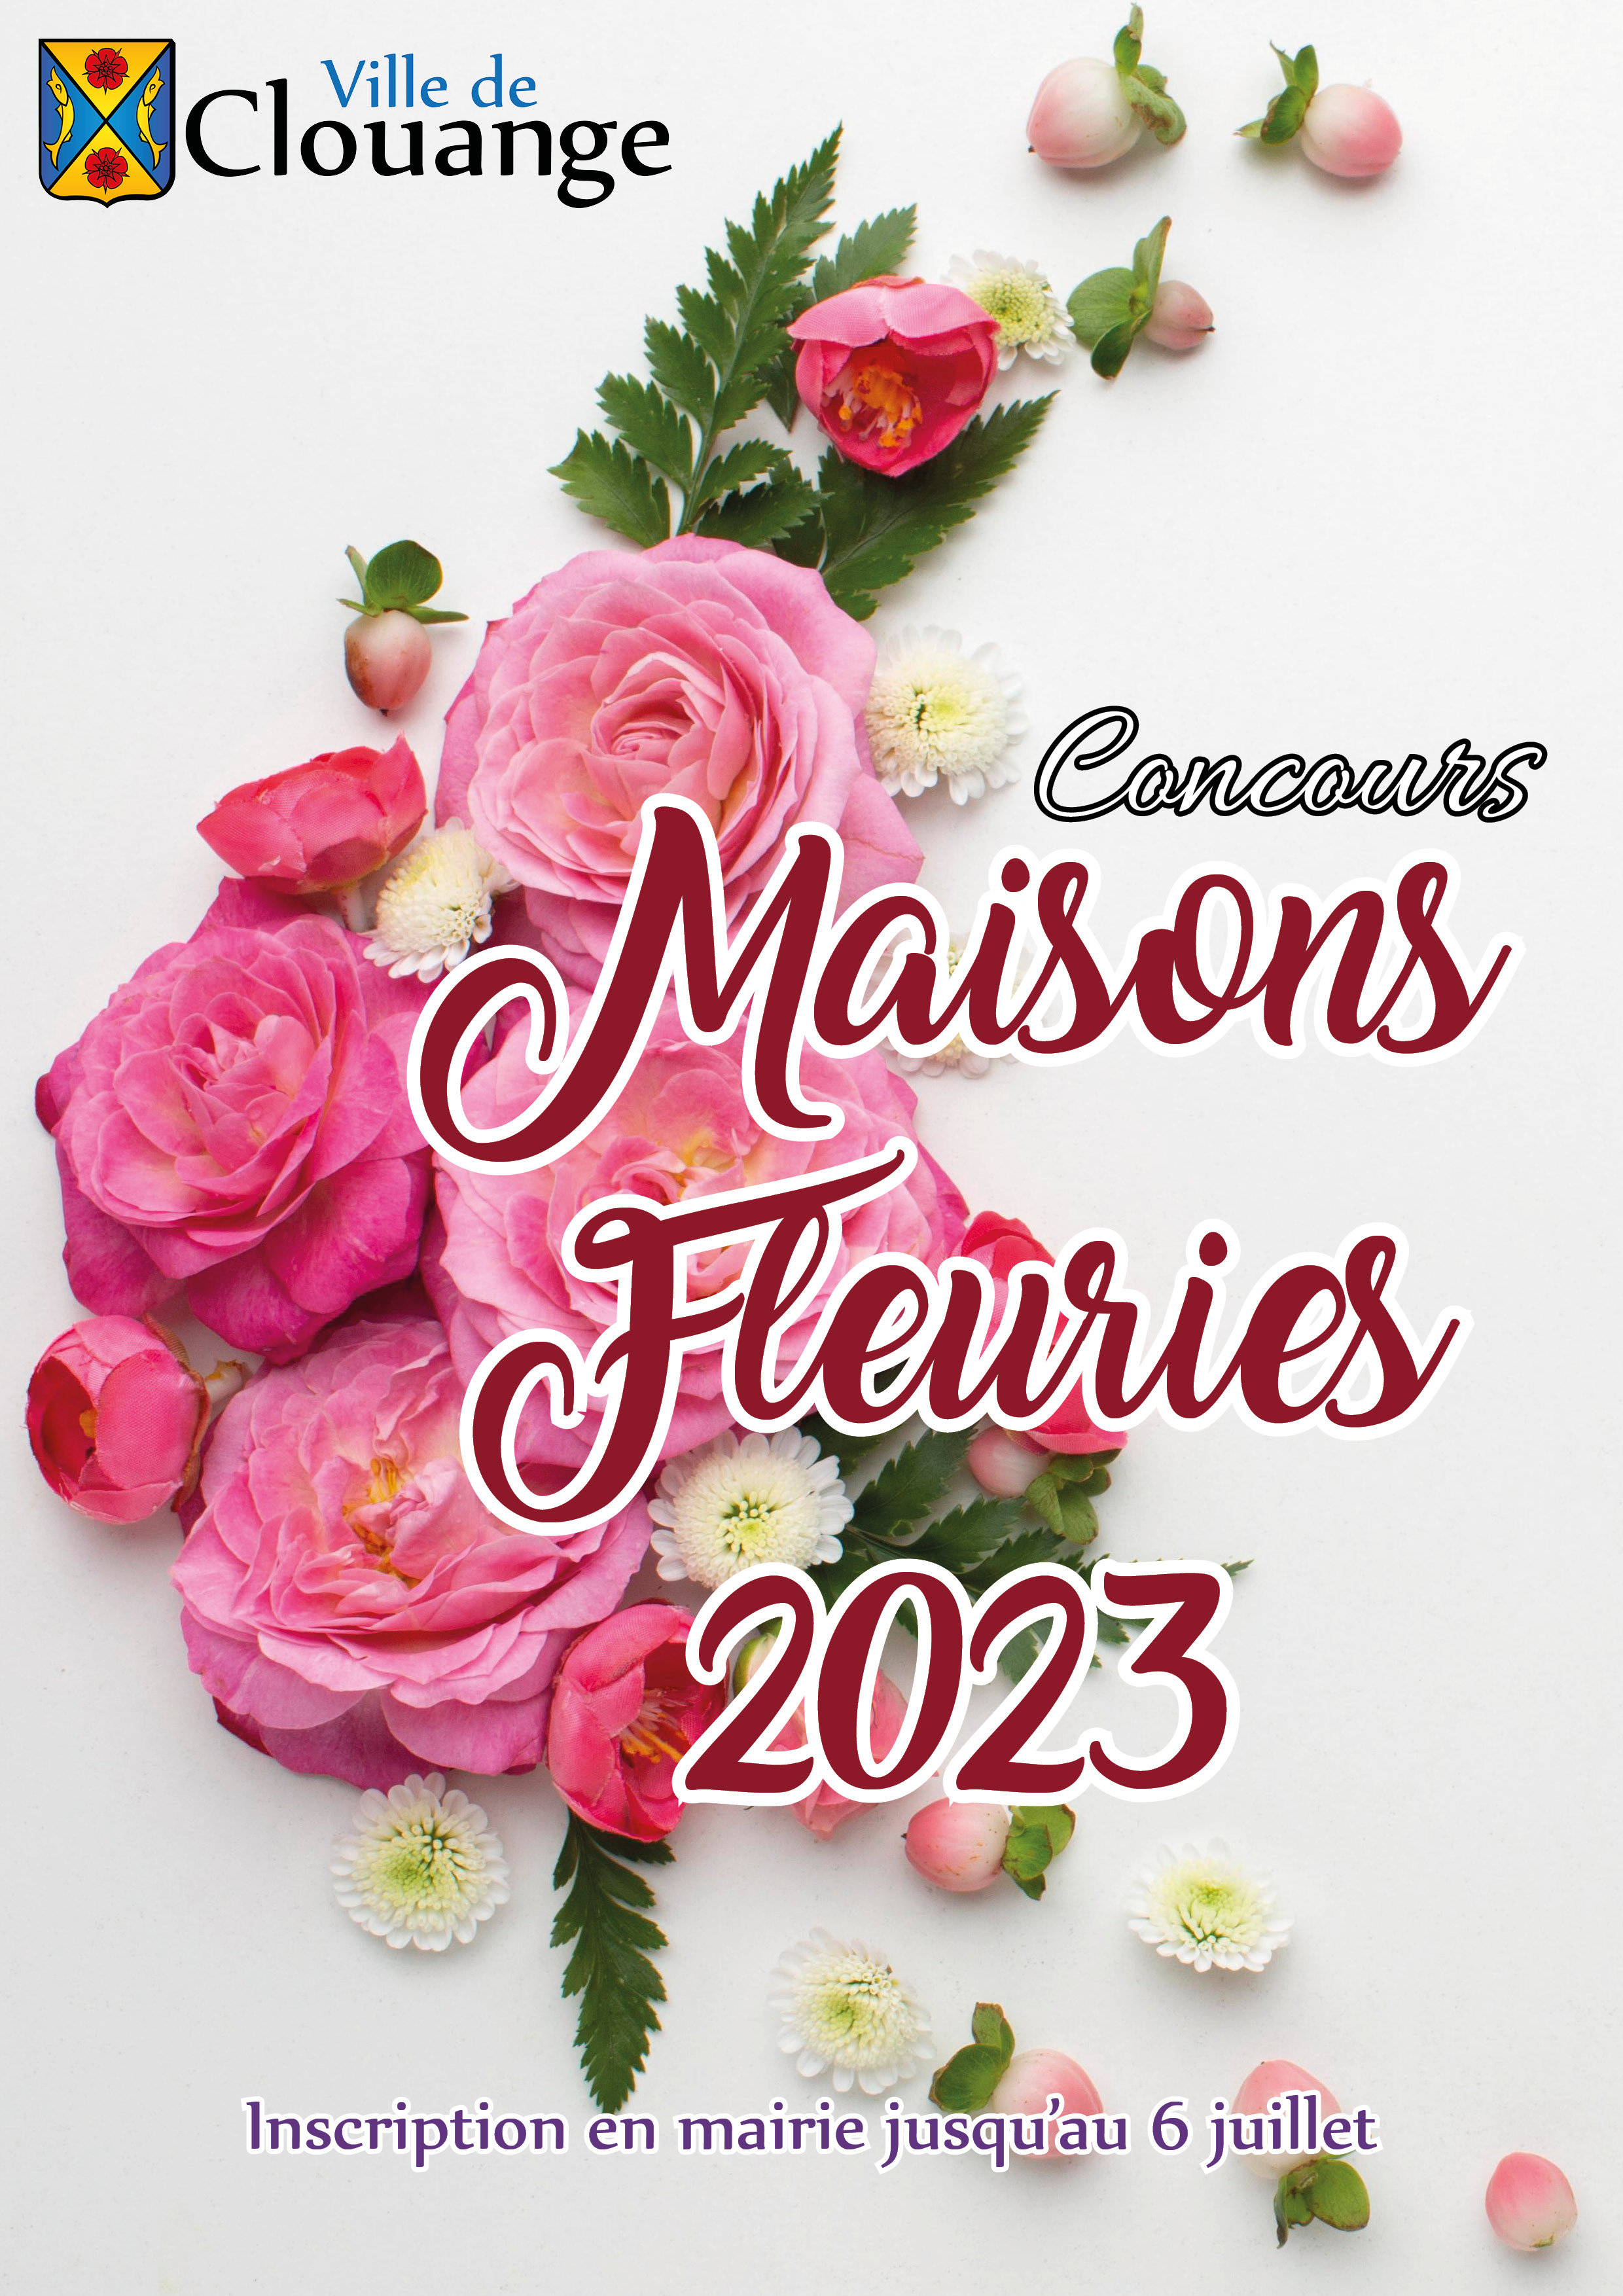 Concours des maisons fleuries 2023